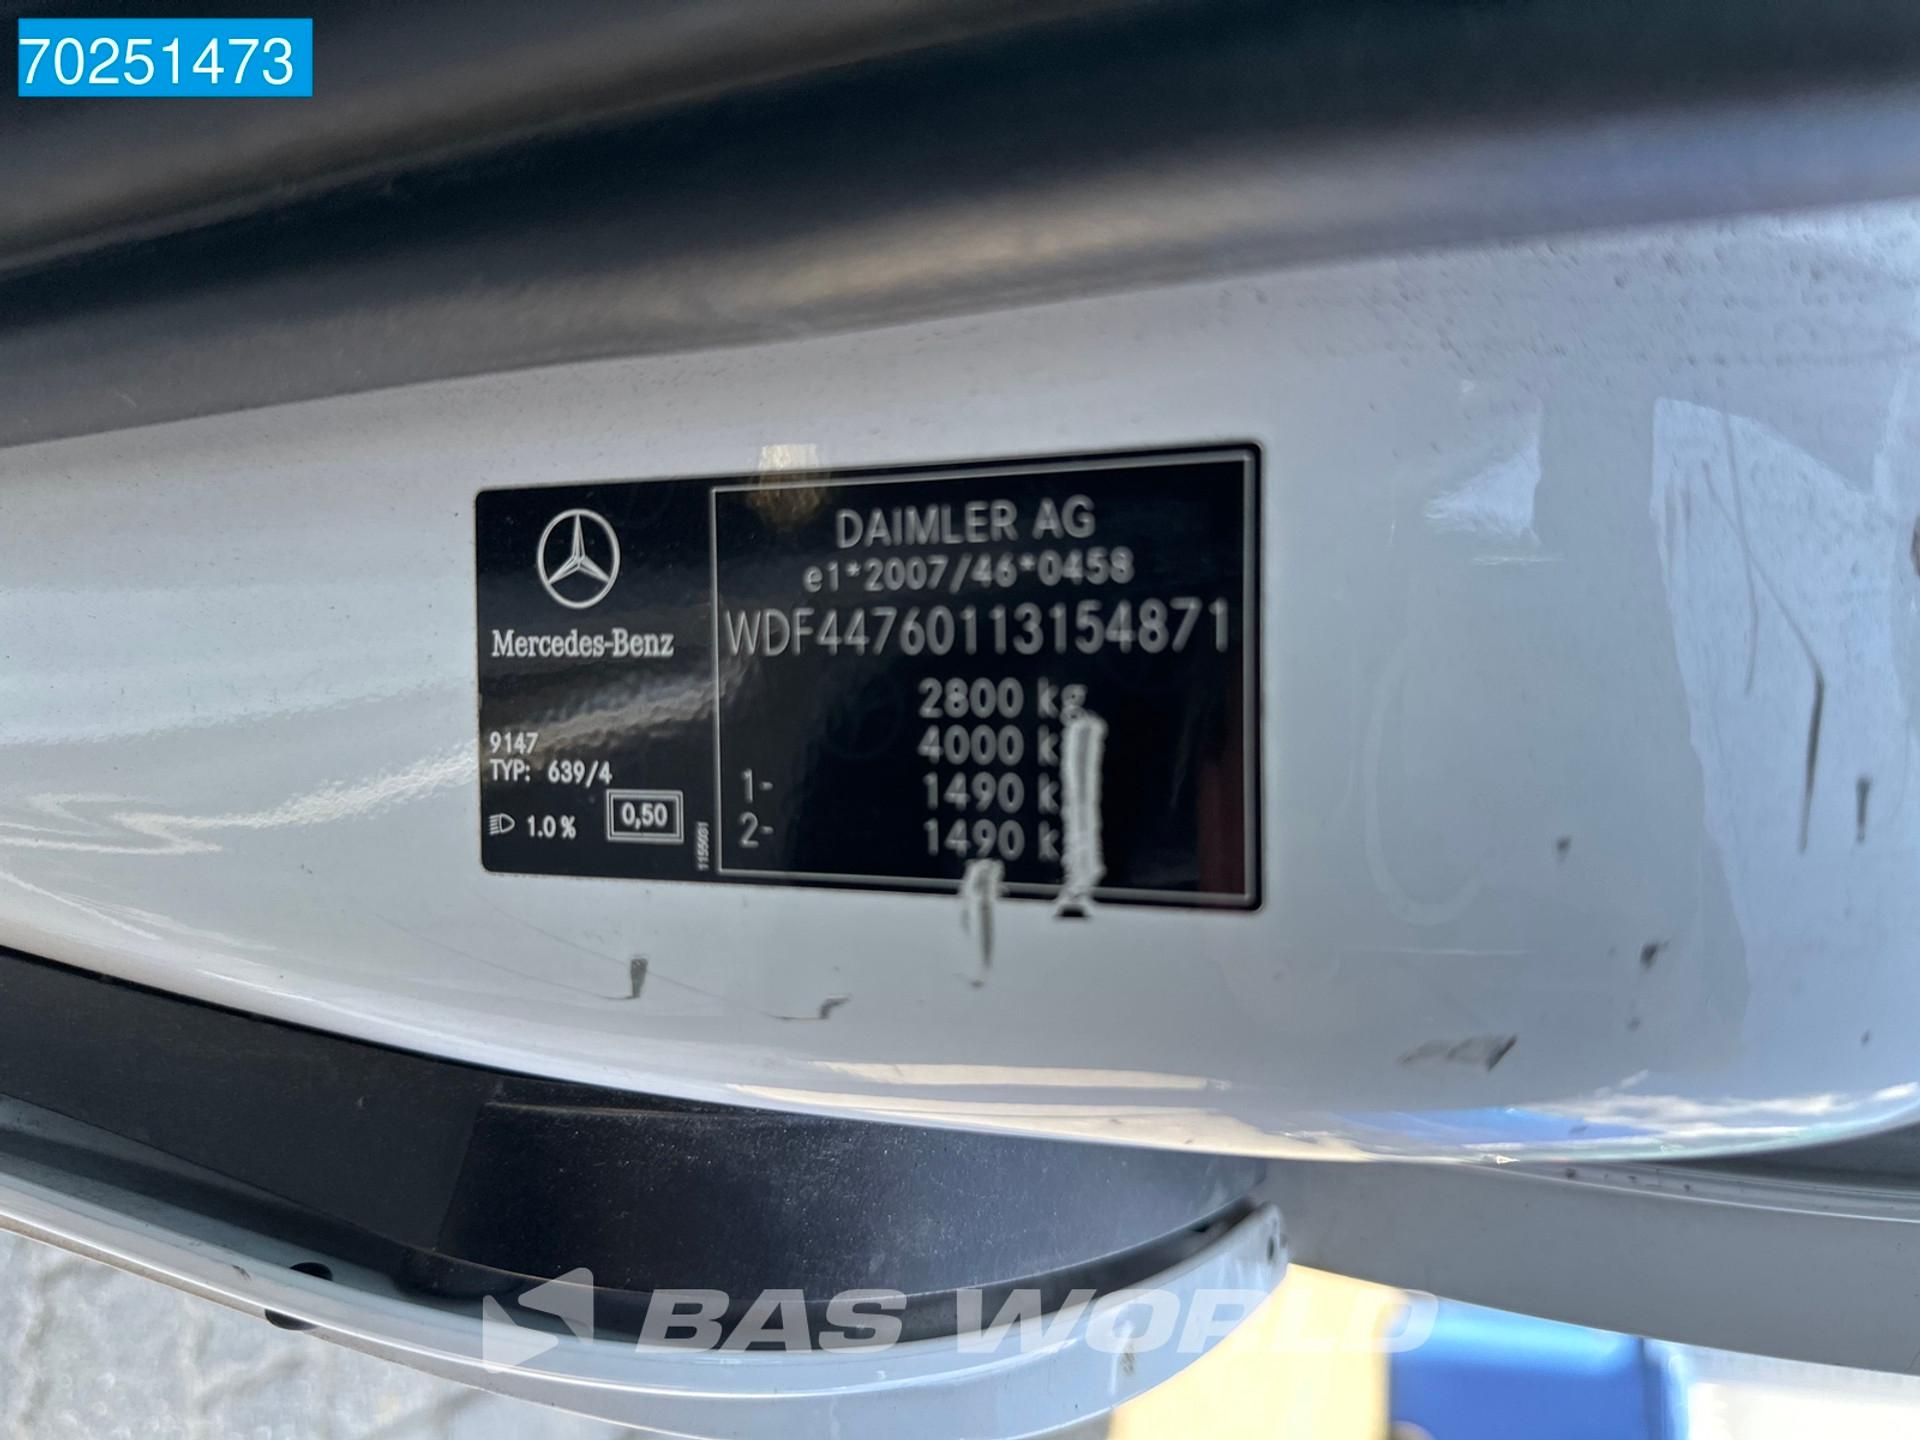 Foto 16 van Mercedes-Benz 109 L1H1 Kompakt 2x Schuifdeur Airco Camera 5m3 Airco